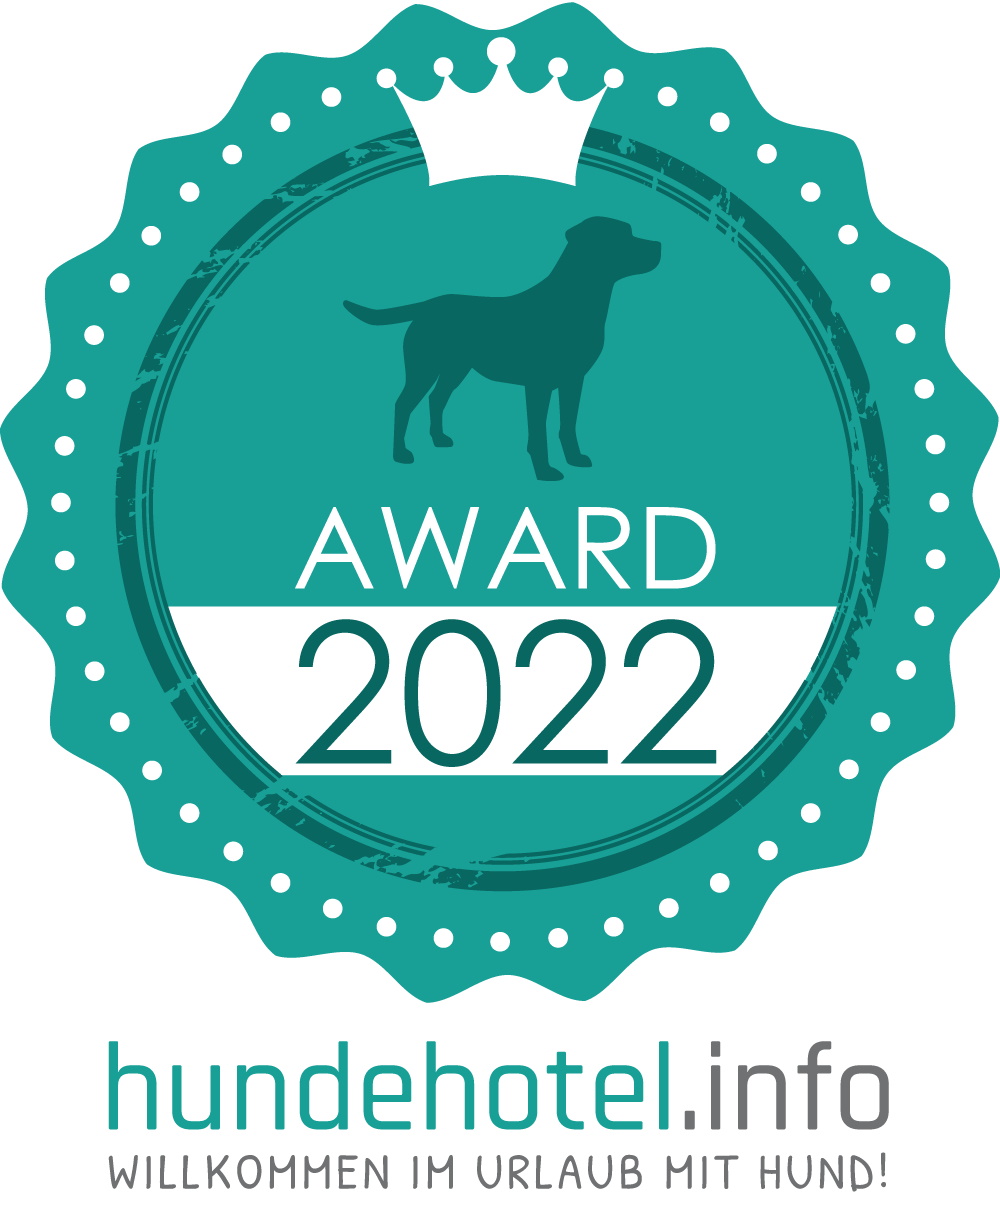 logo_hundehotel-info_award_2022-2.jpg